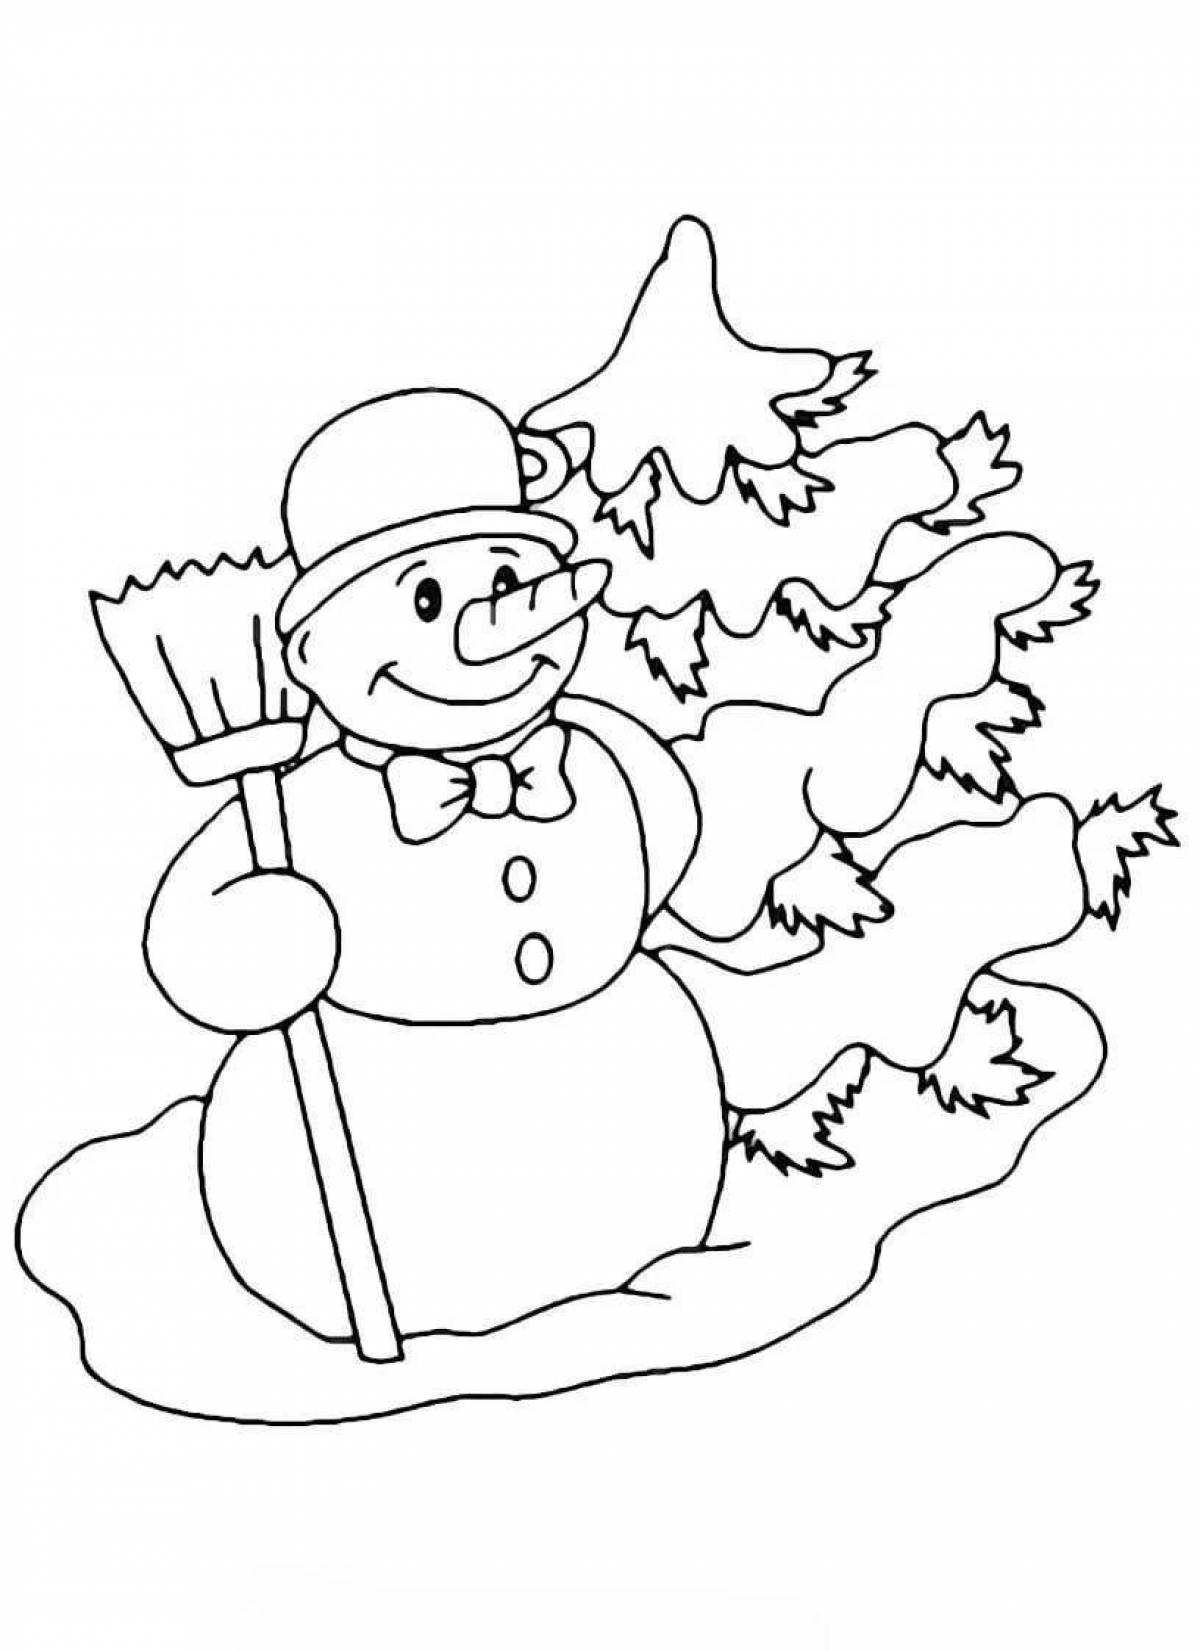 Раскраска радостный детский снеговик